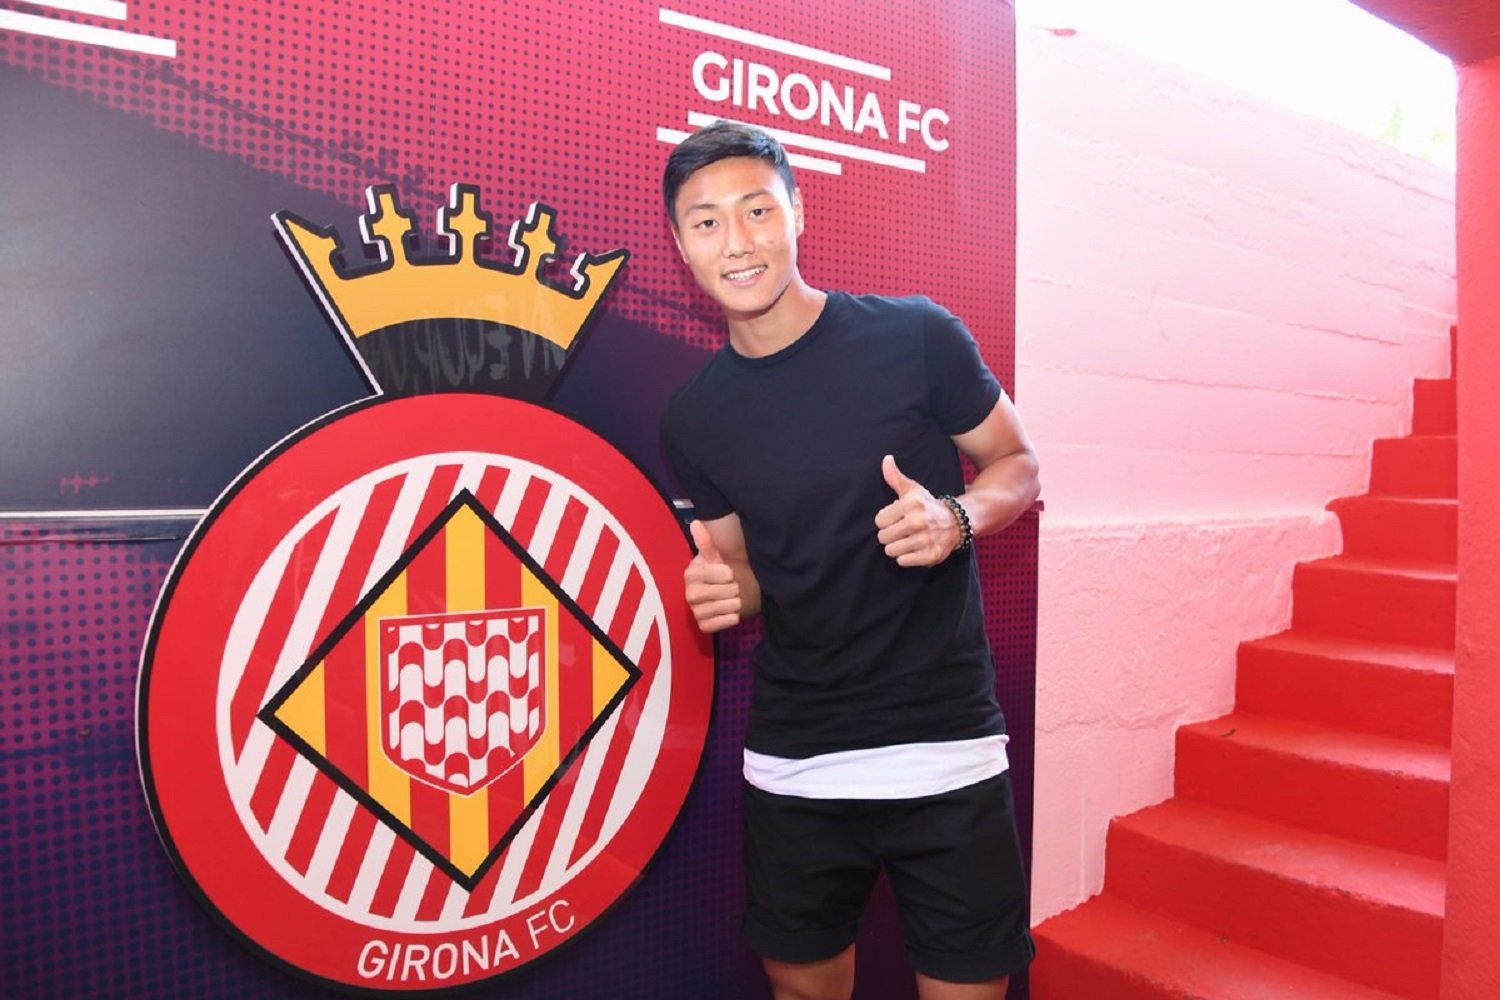 El Girona fitxa Paik Seung-ho del Barça